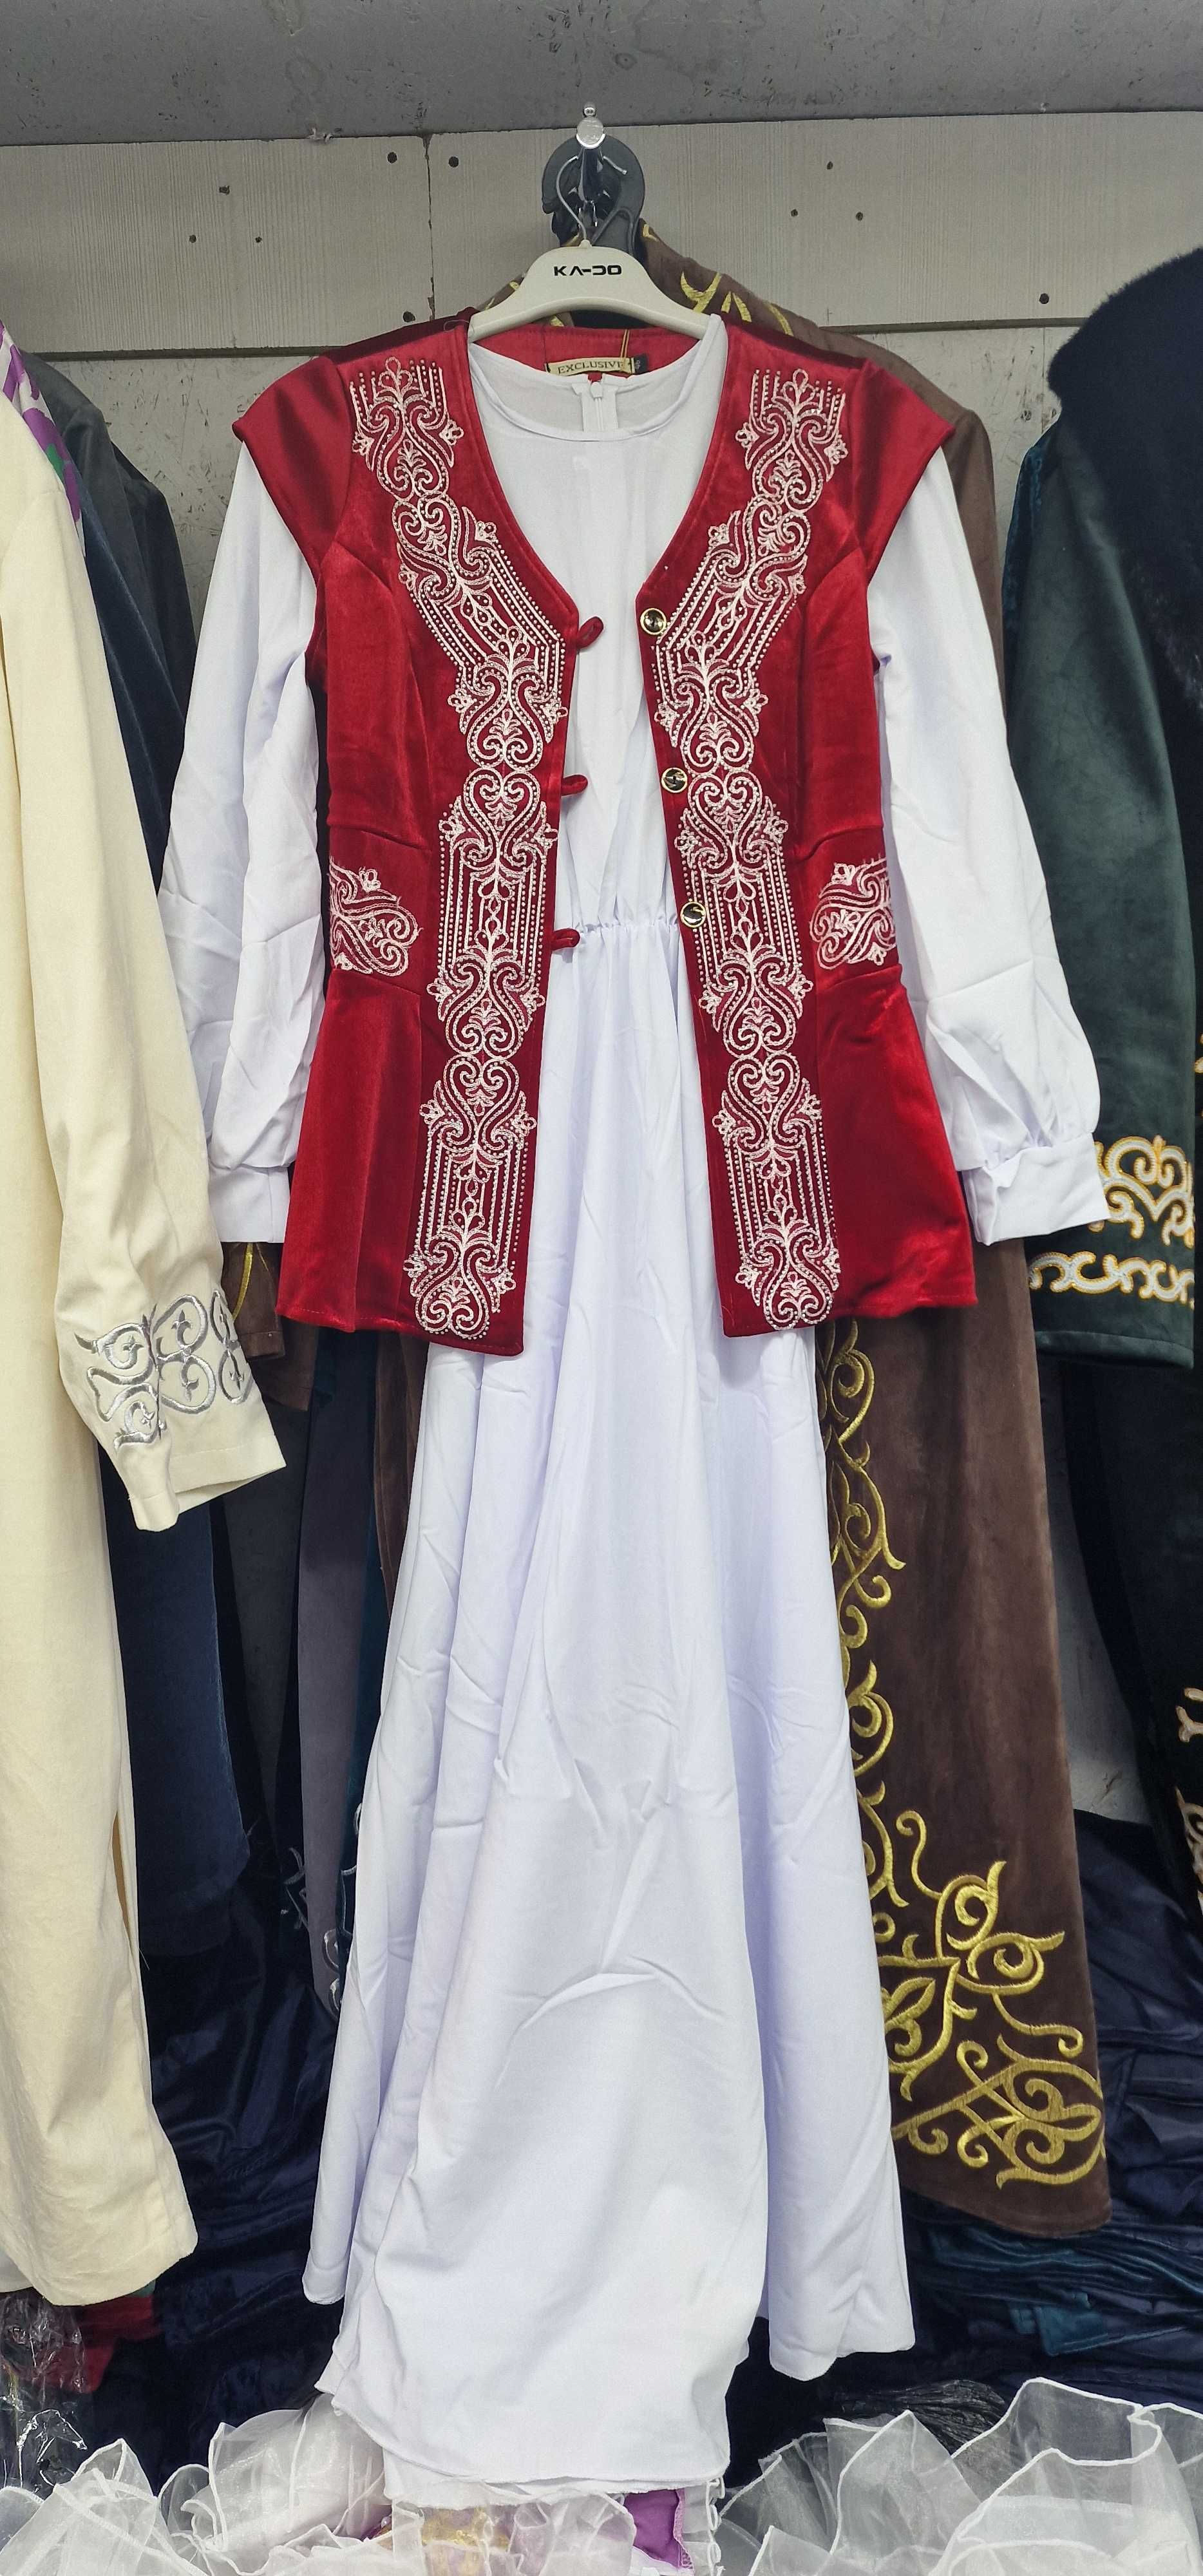 Казахские национальные костюмы. Огромный выбор, доставка